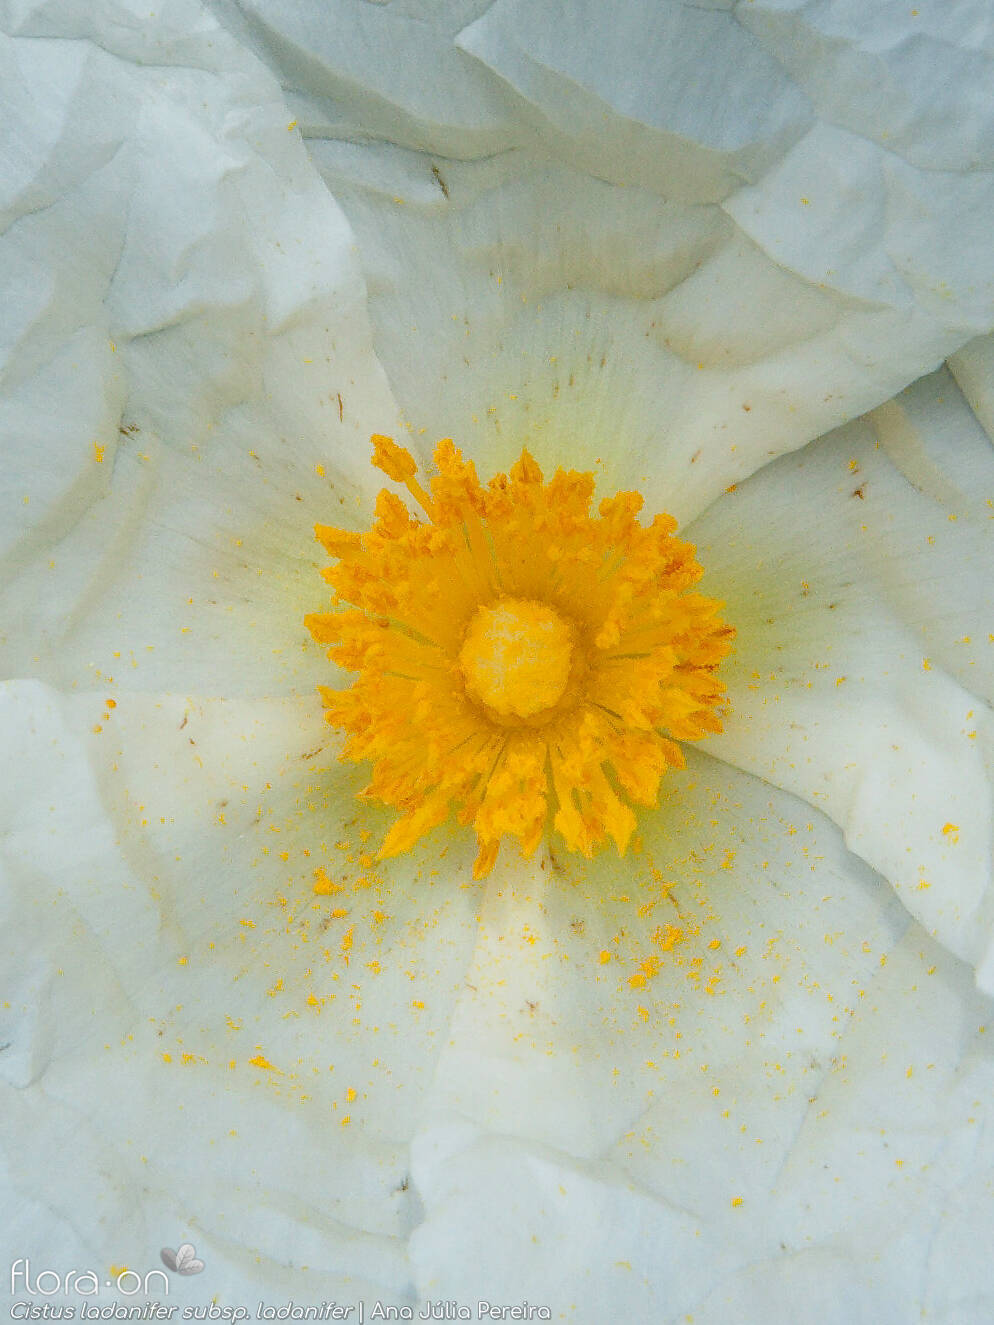 Cistus ladanifer ladanifer - Flor (close-up) | Ana Júlia Pereira; CC BY-NC 4.0